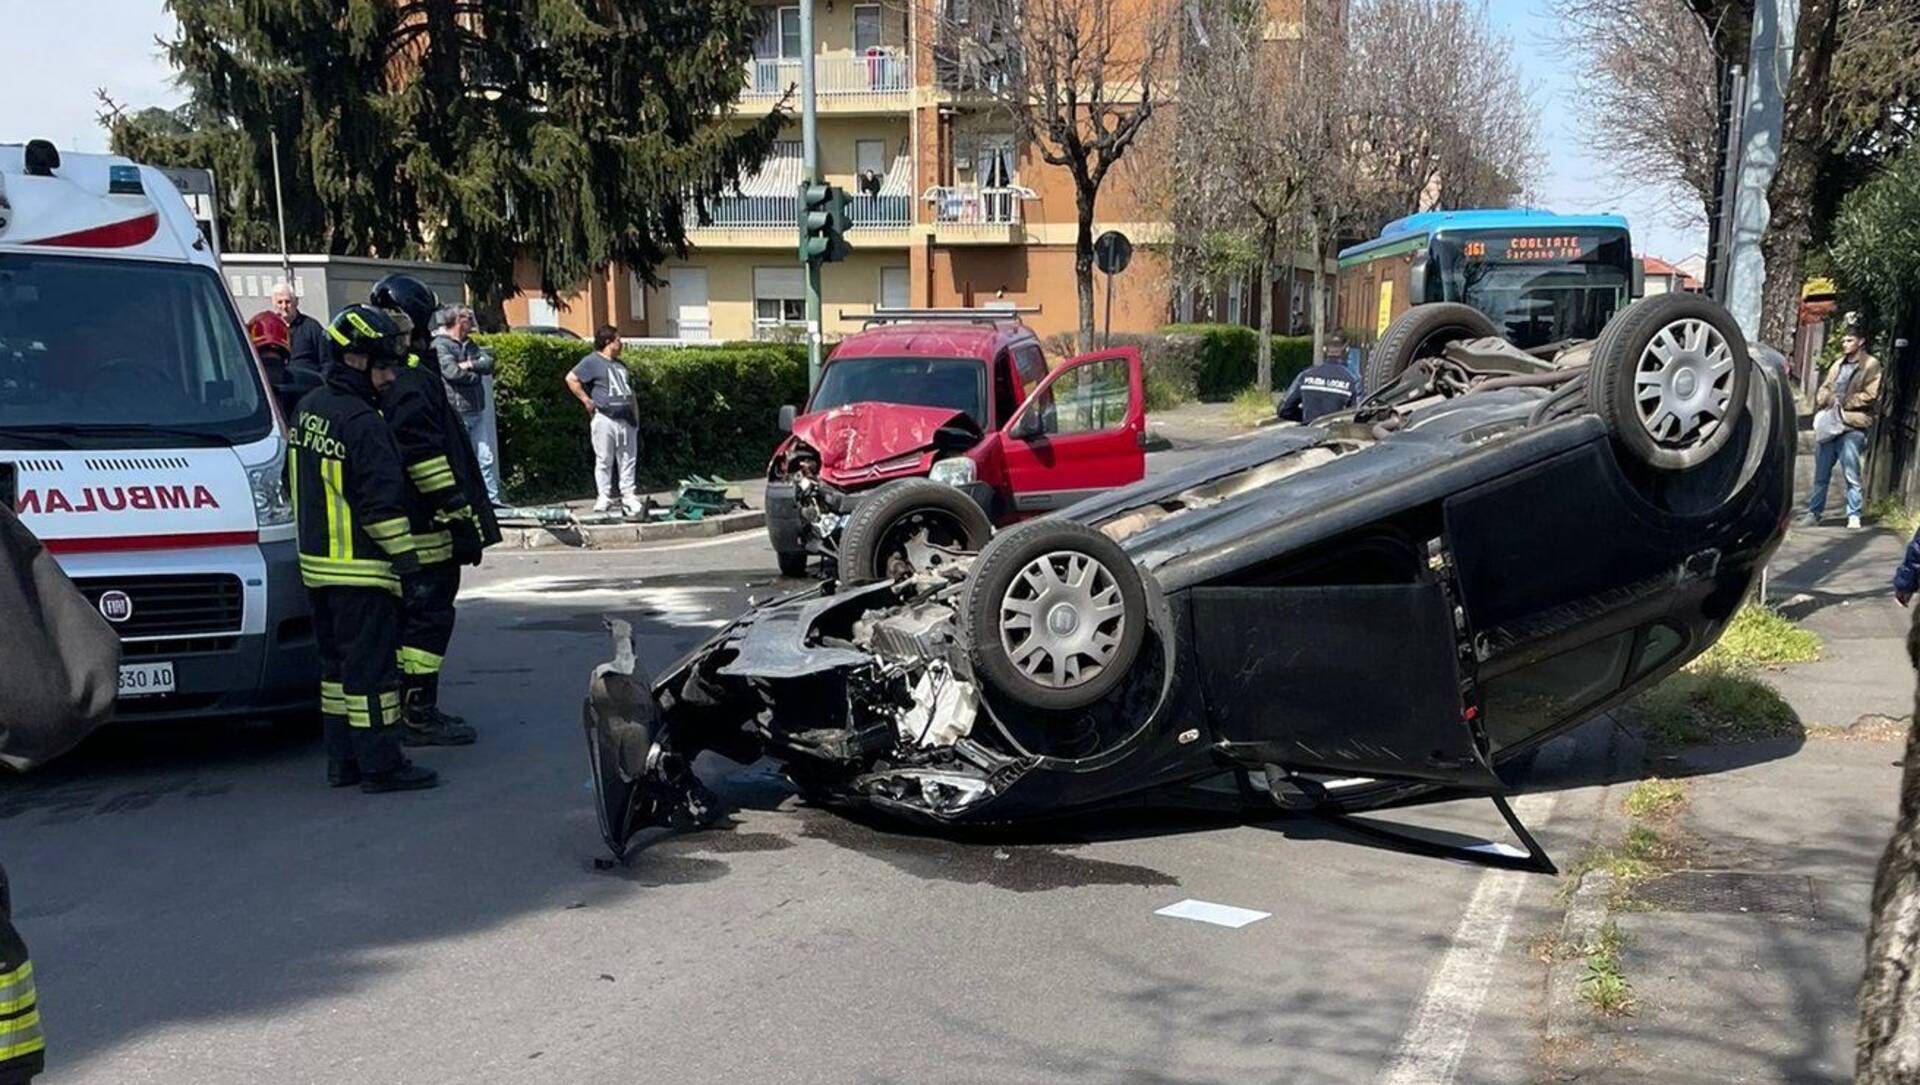 Ieri a Saronno: arrestato ladro al Mec. Auto ribaltata con 2 feriti. Parà anti-vandali. Politica: il caso Marta Gilli